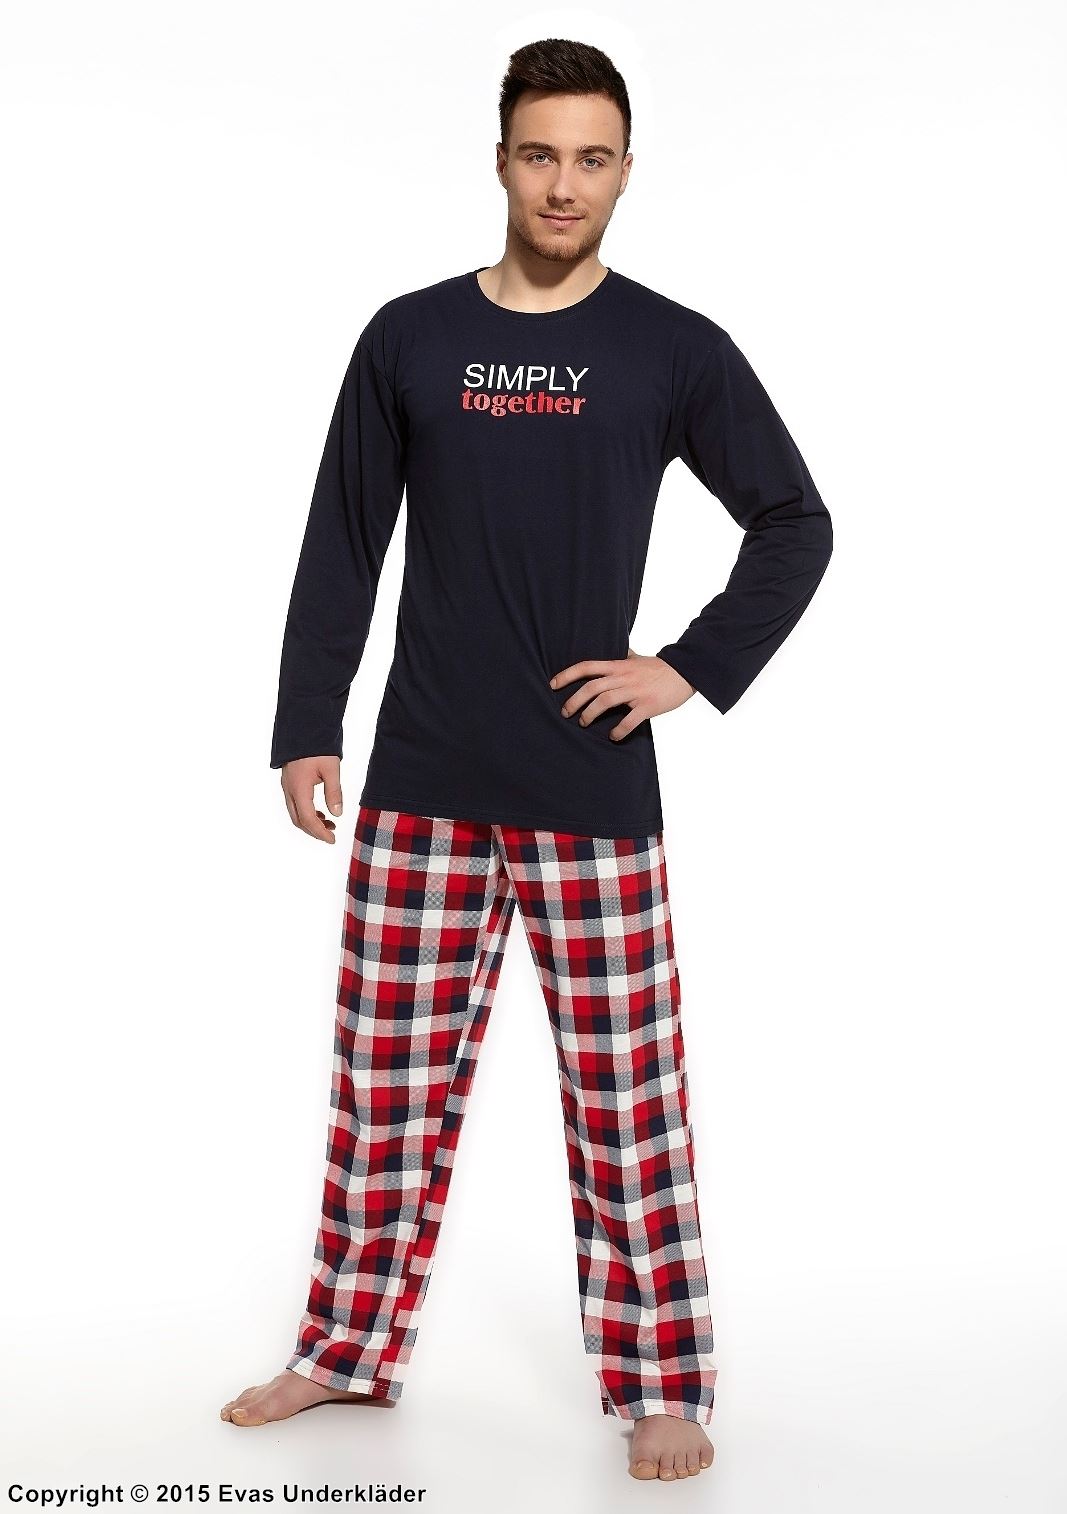 Svart- och rödrutig pyjamas med tryck